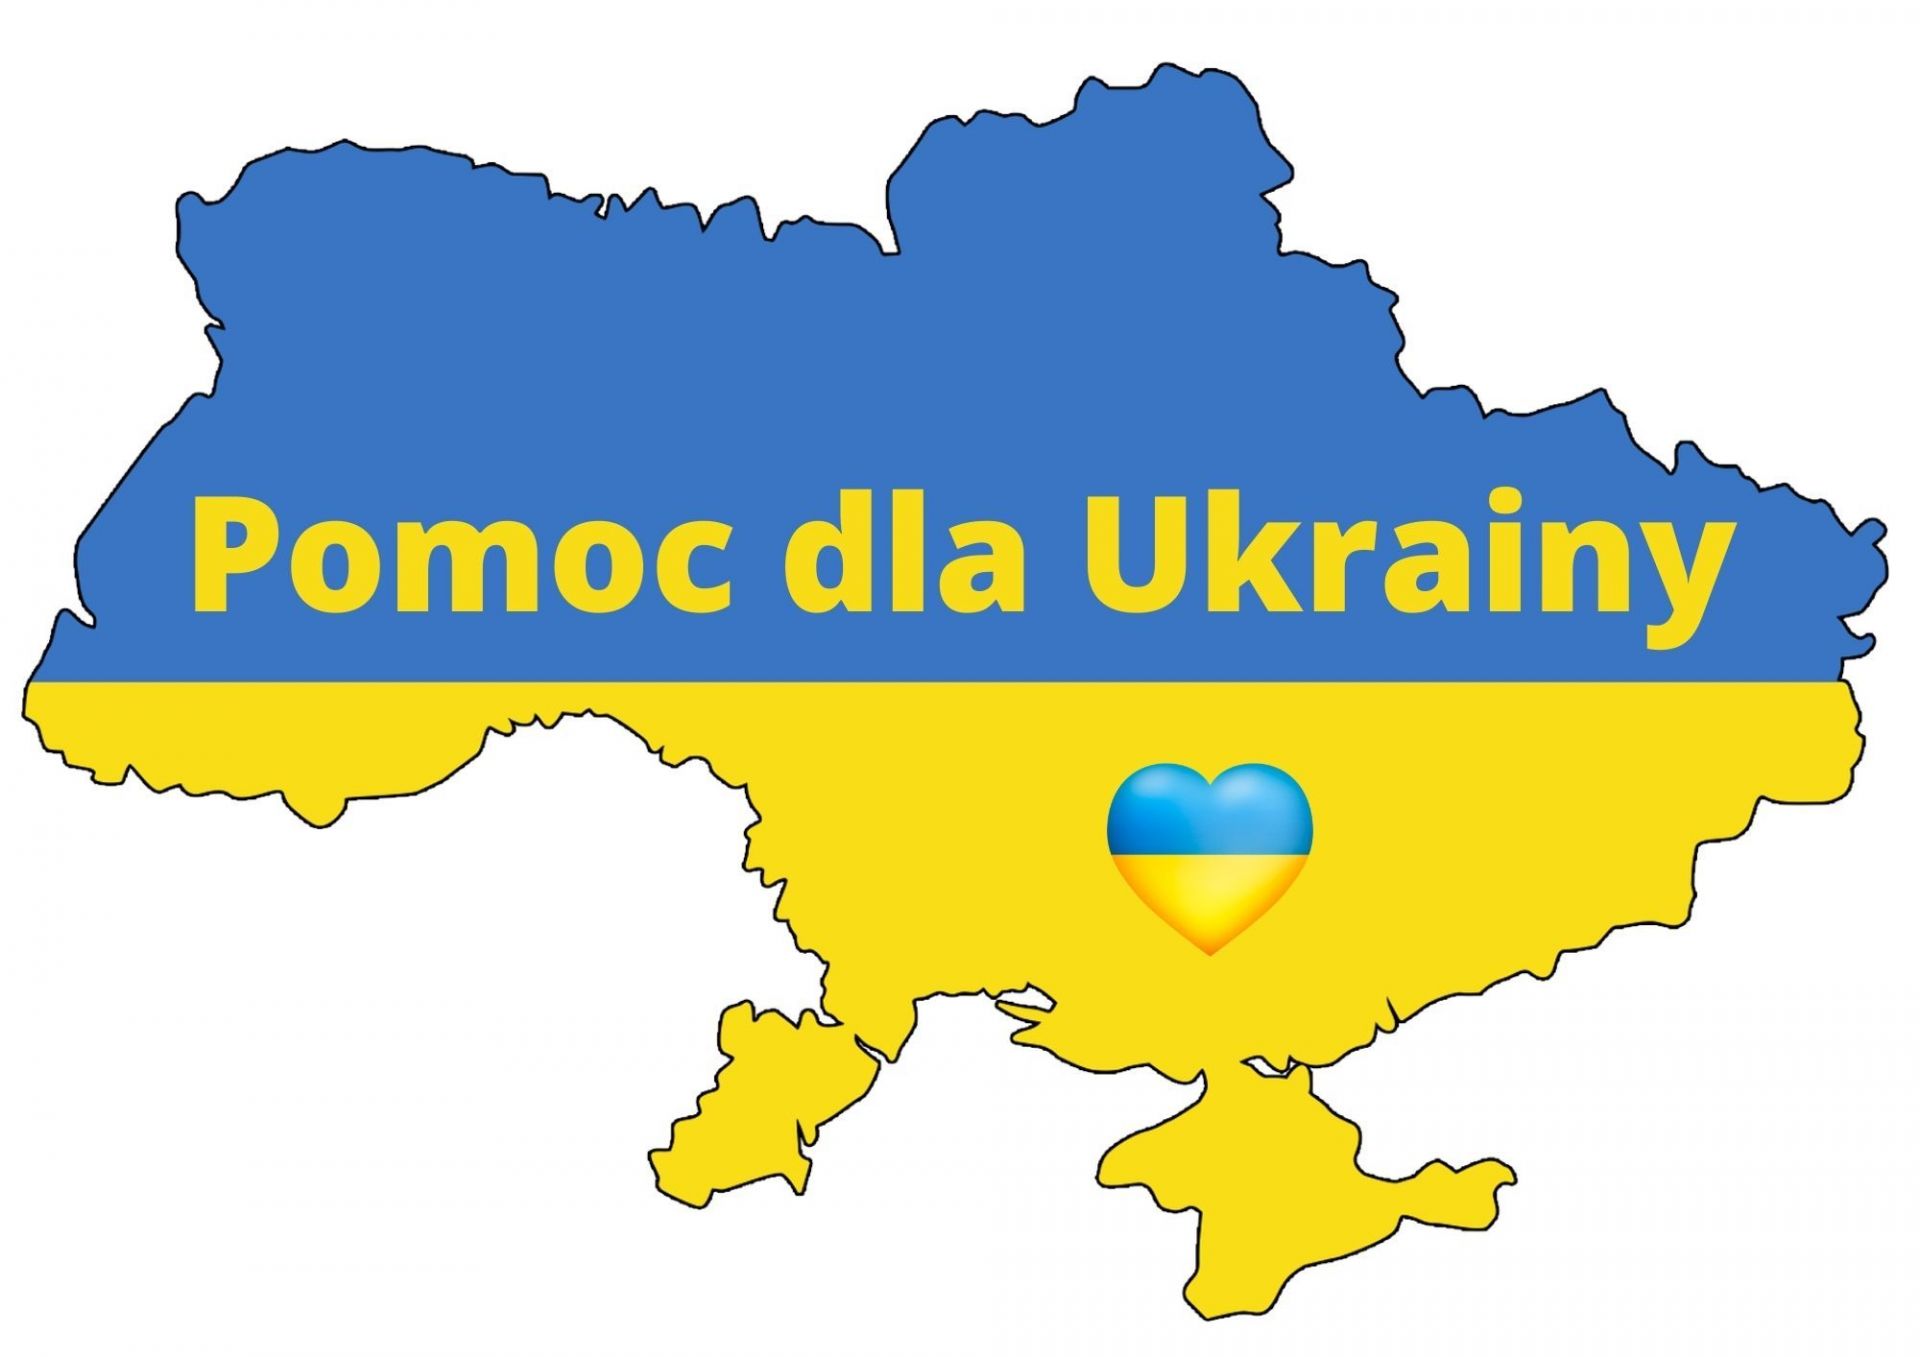 Pomoc dla Ukrainy musi mieć charakter długoterminowy. Biznes deklaruje gotowość dalszego wsparcia inicjatyw pomocowych